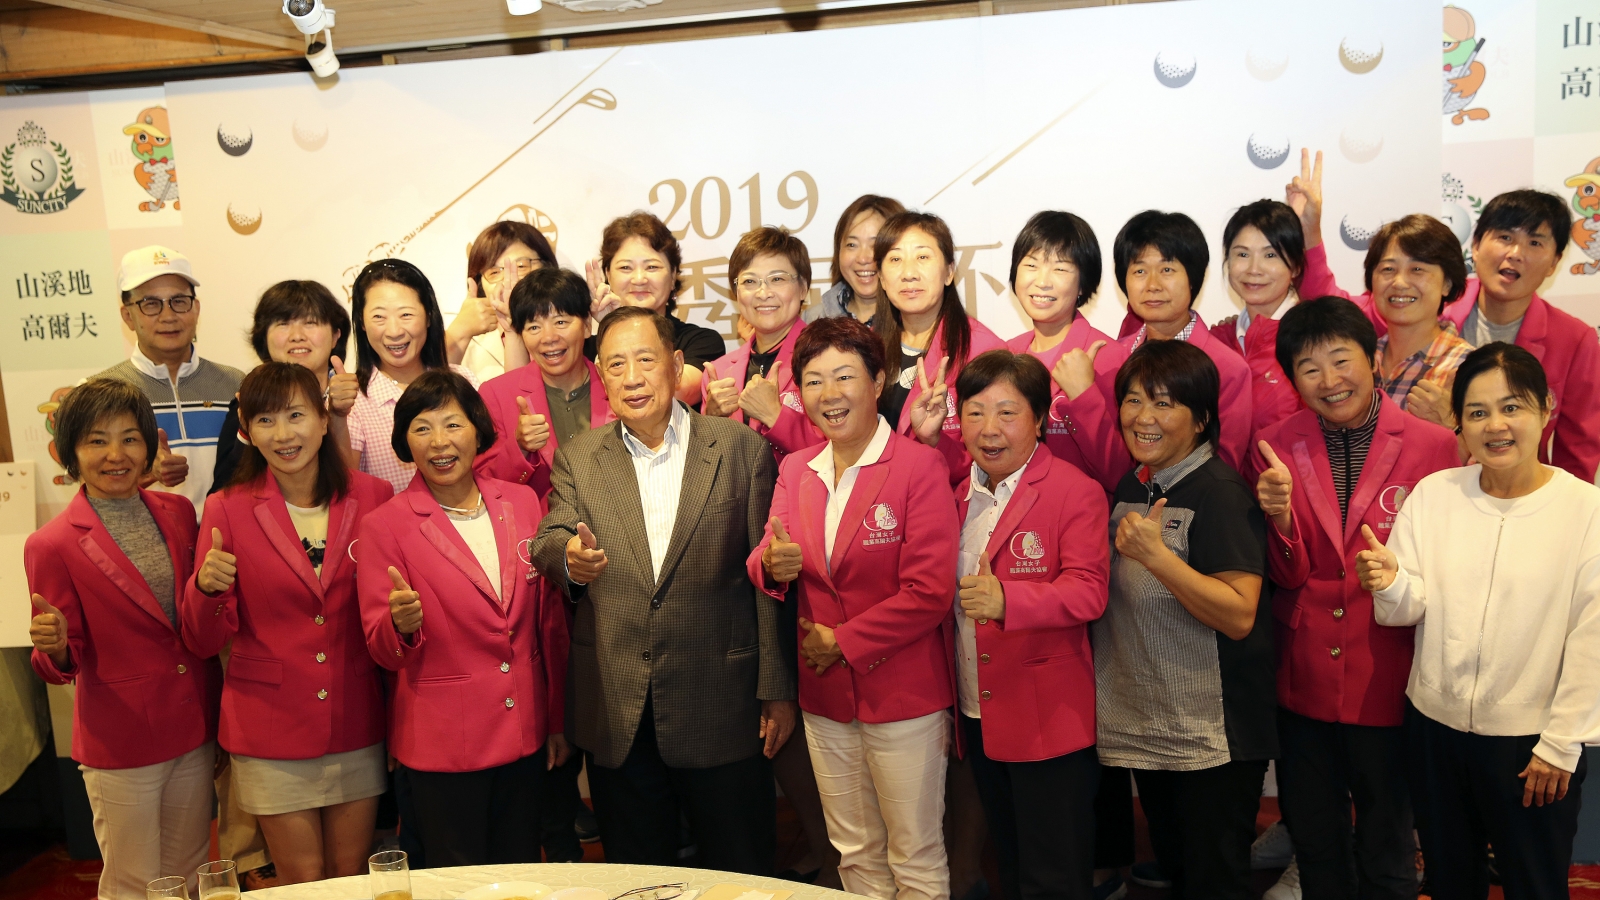 第一屆秀菊杯女子職業高爾夫台日長春交流賽完美end合影留念